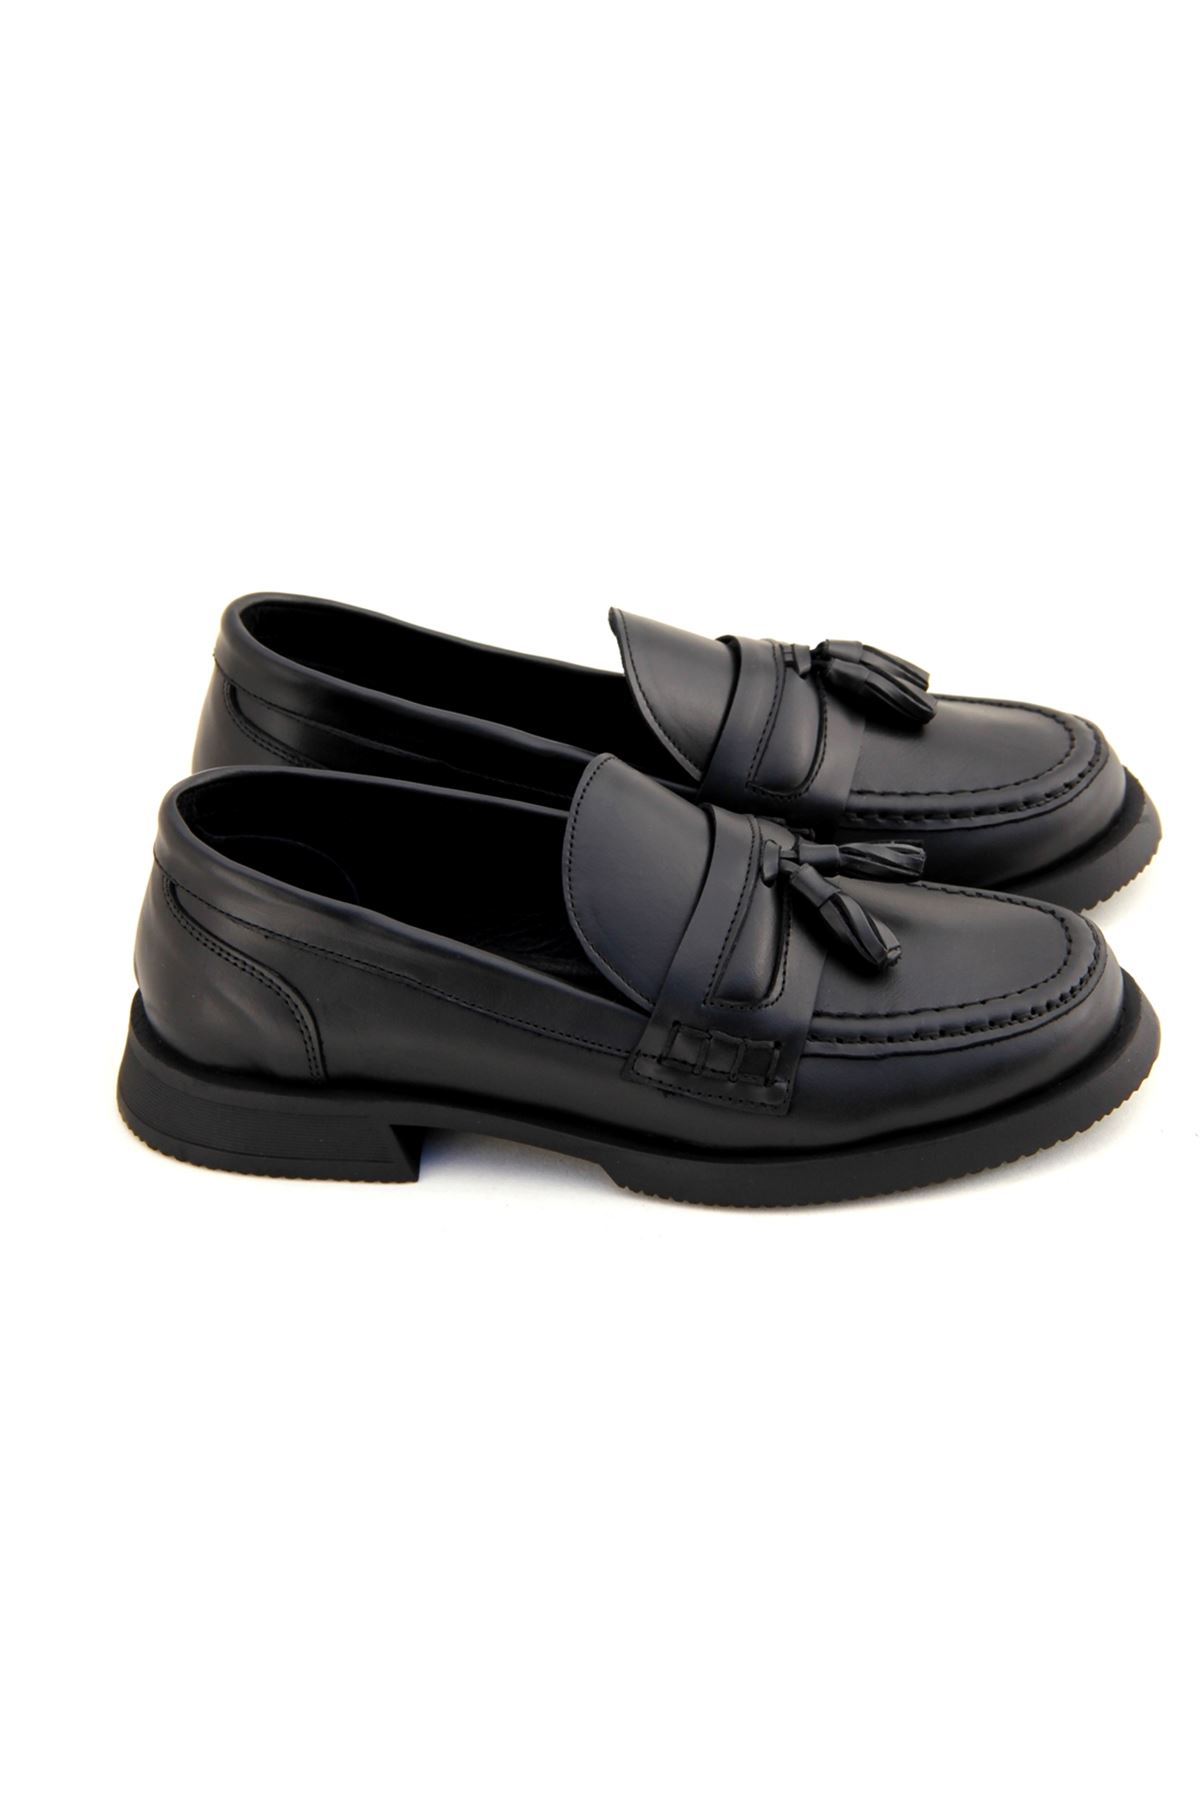 Albini 101163 Hakiki Deri Kadın Ayakkabı - Siyah